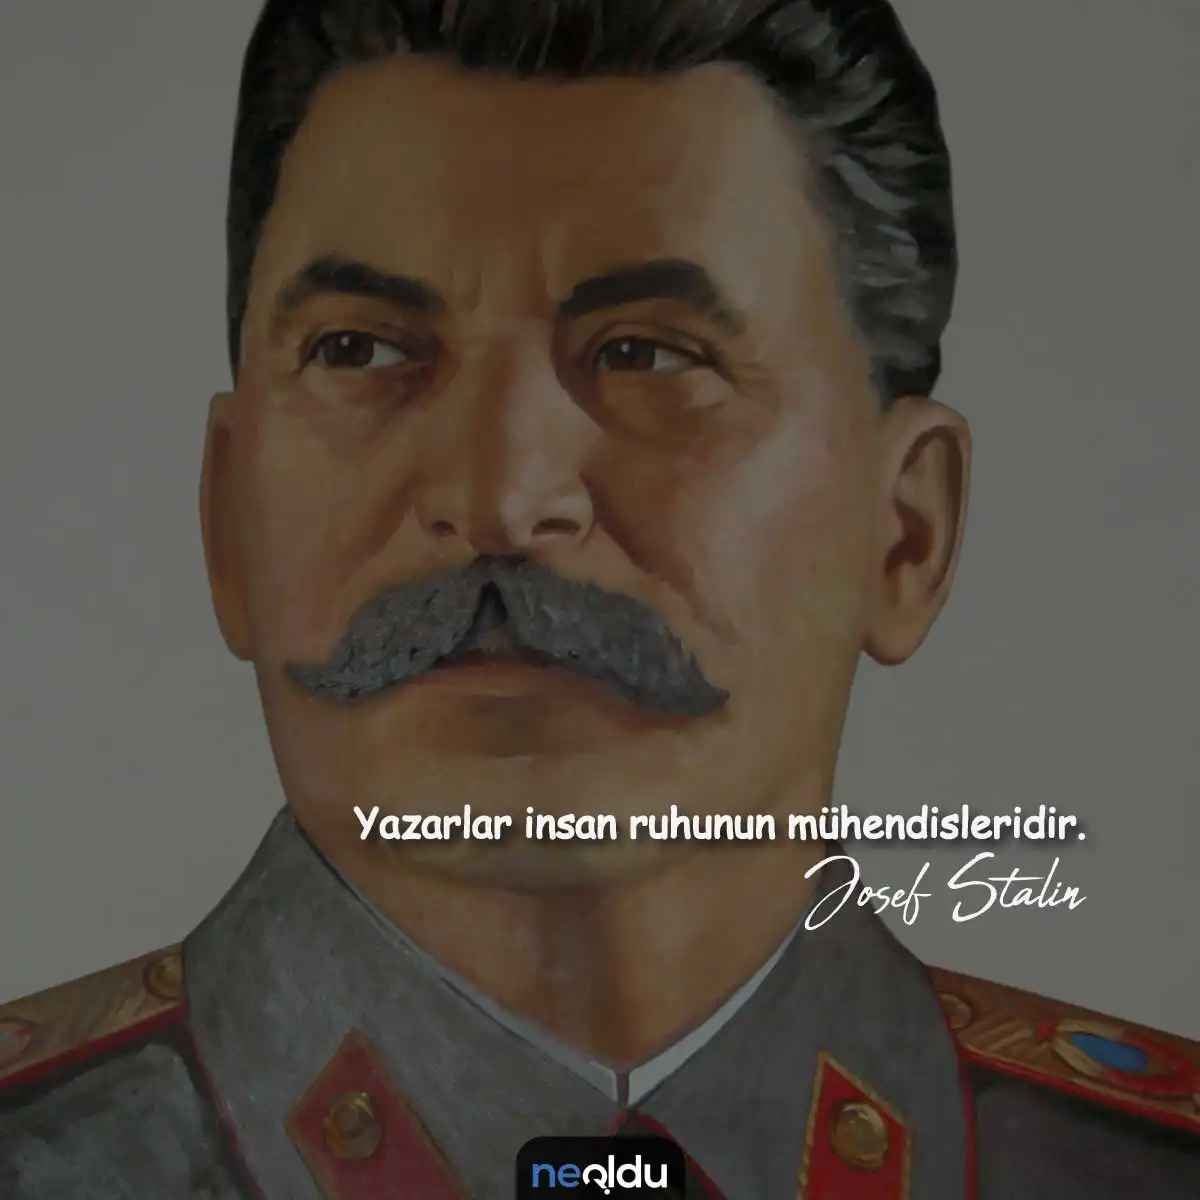 Josef Stalin Sözleri